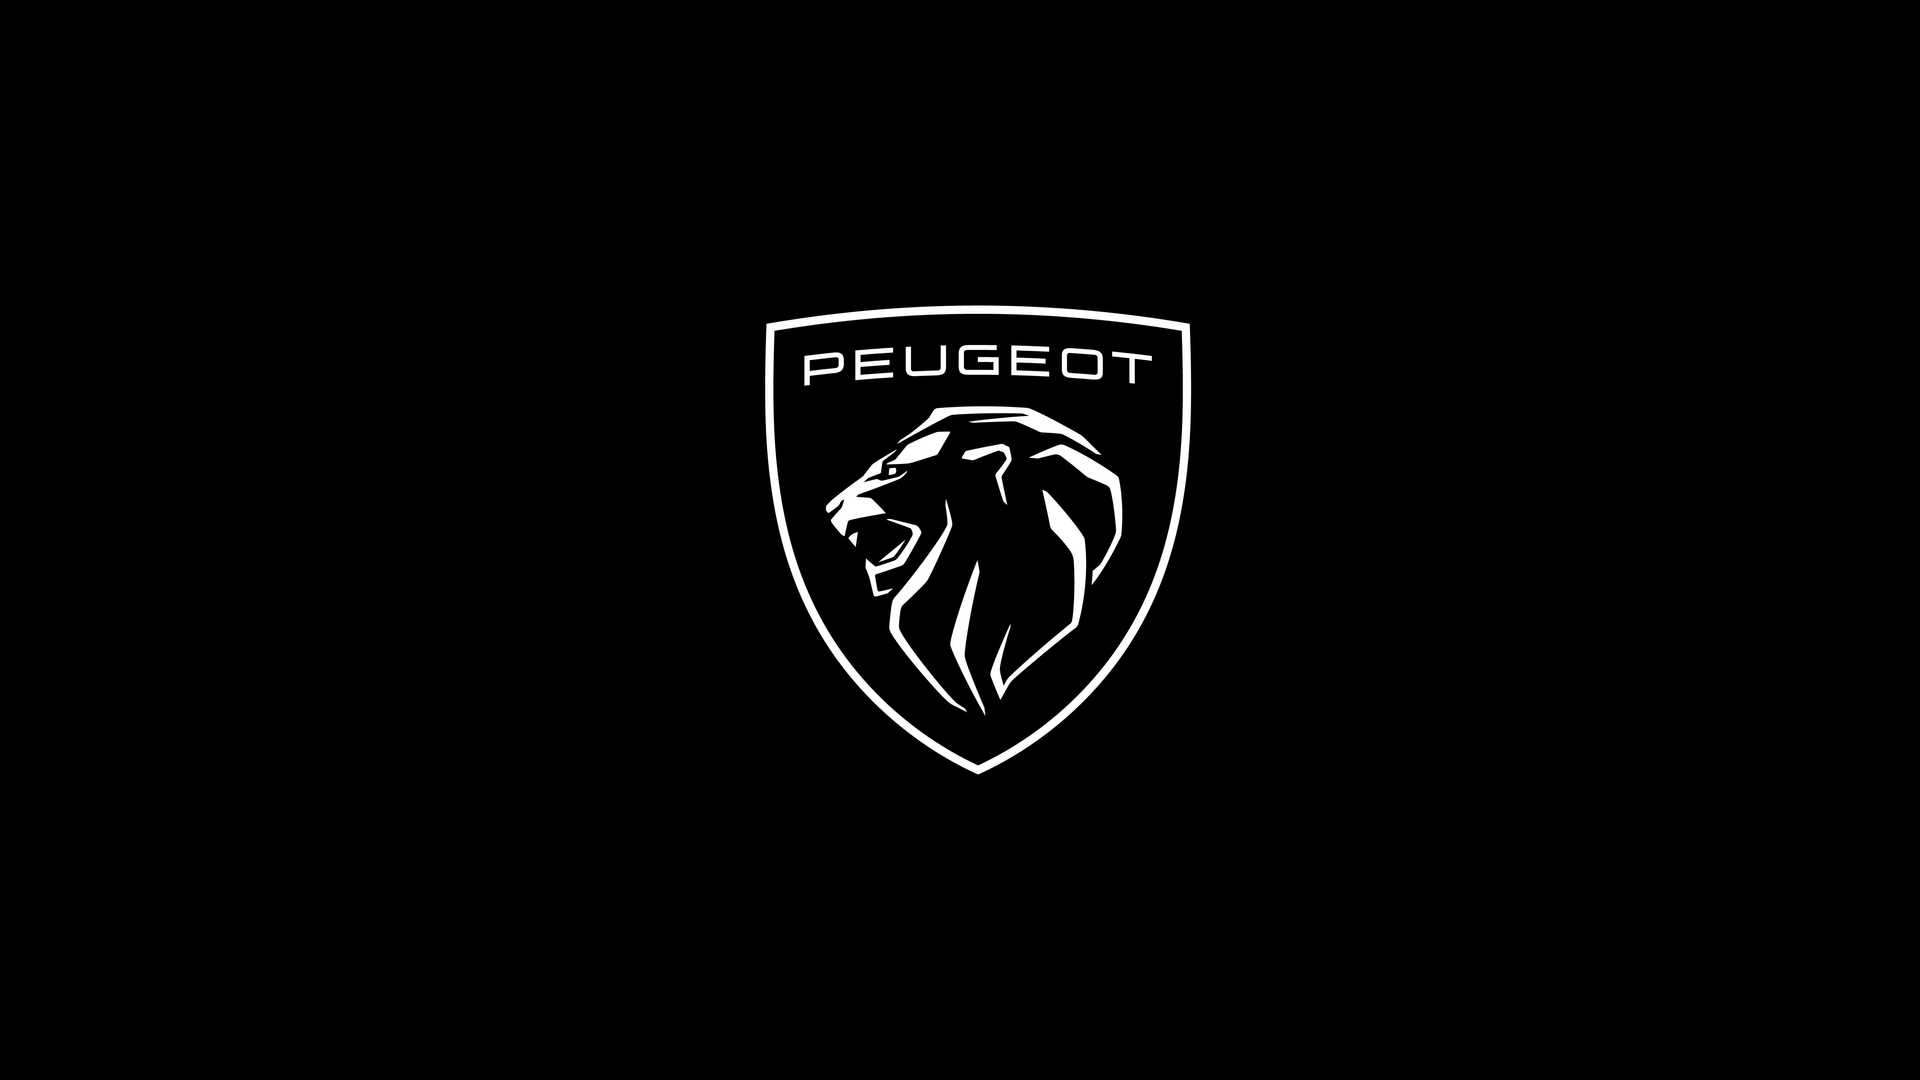 logo-peugeot-2021-3.jpg